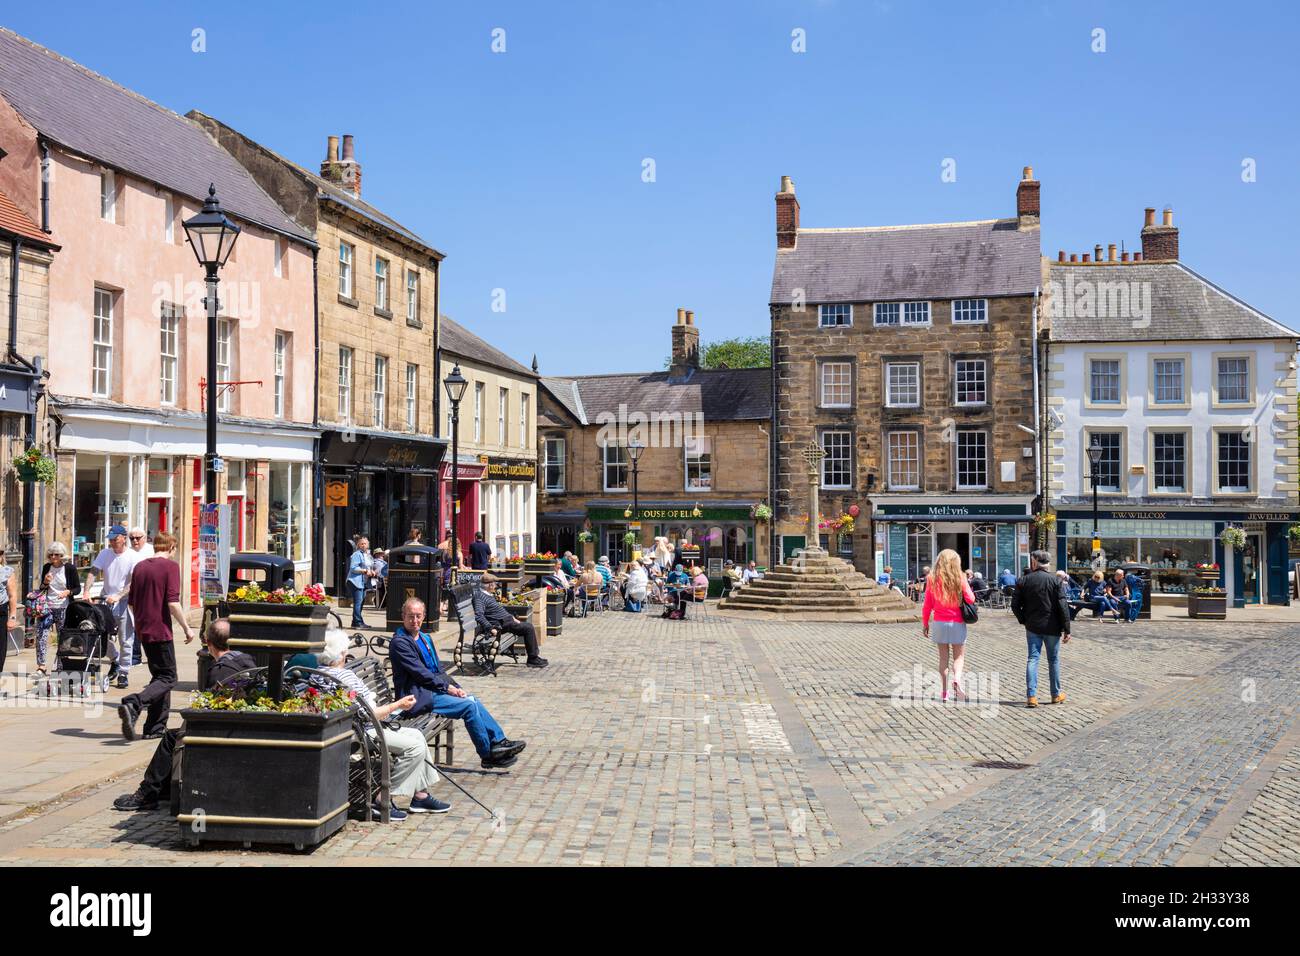 Die Menschen auf dem historischen Marktplatz und dem Markt überqueren das Stadtzentrum von Alnwick Alnwick Northumberland Northumbria England GB Europa Stockfoto